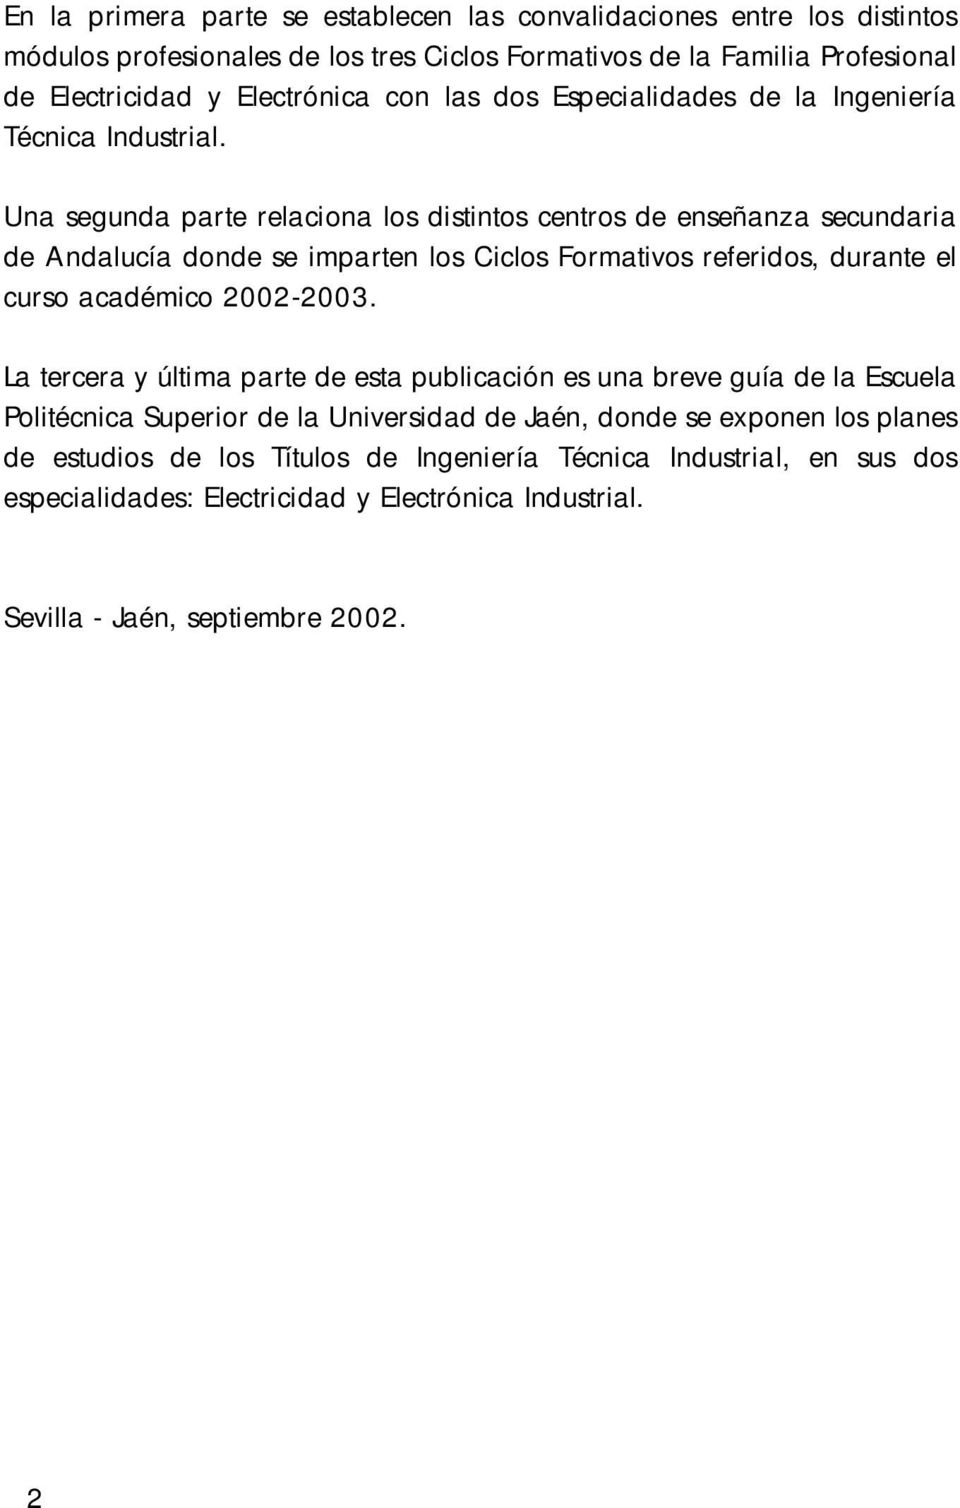 Una segunda parte relaciona los distintos centros de enseñanza secundaria de Andalucía donde se imparten los Ciclos Formativos referidos, durante el curso académico 2002-2003.